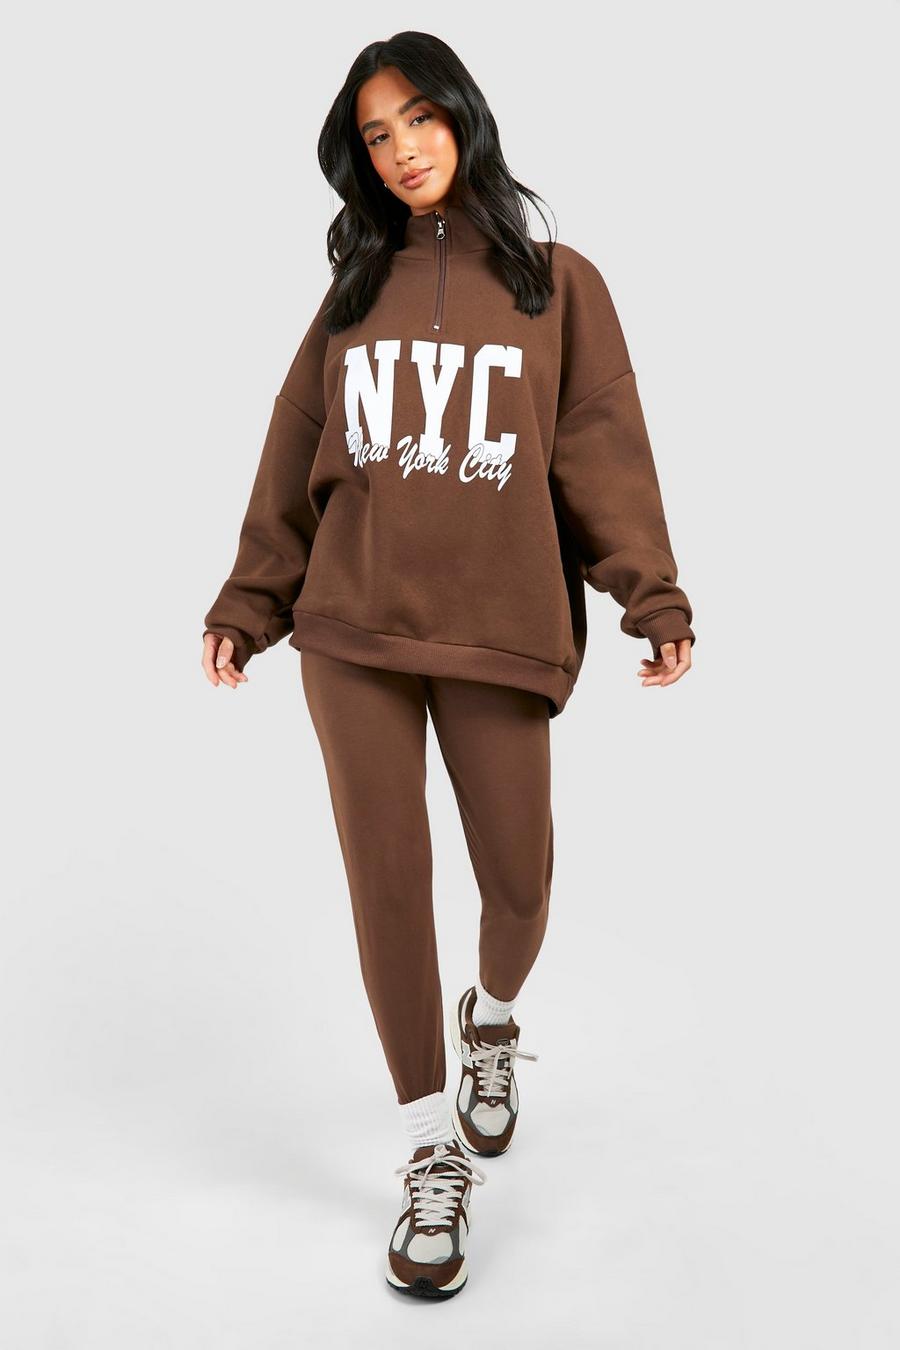 Petite - Survêtement avec legging zippé à slogan N.Y.C, Chocolate